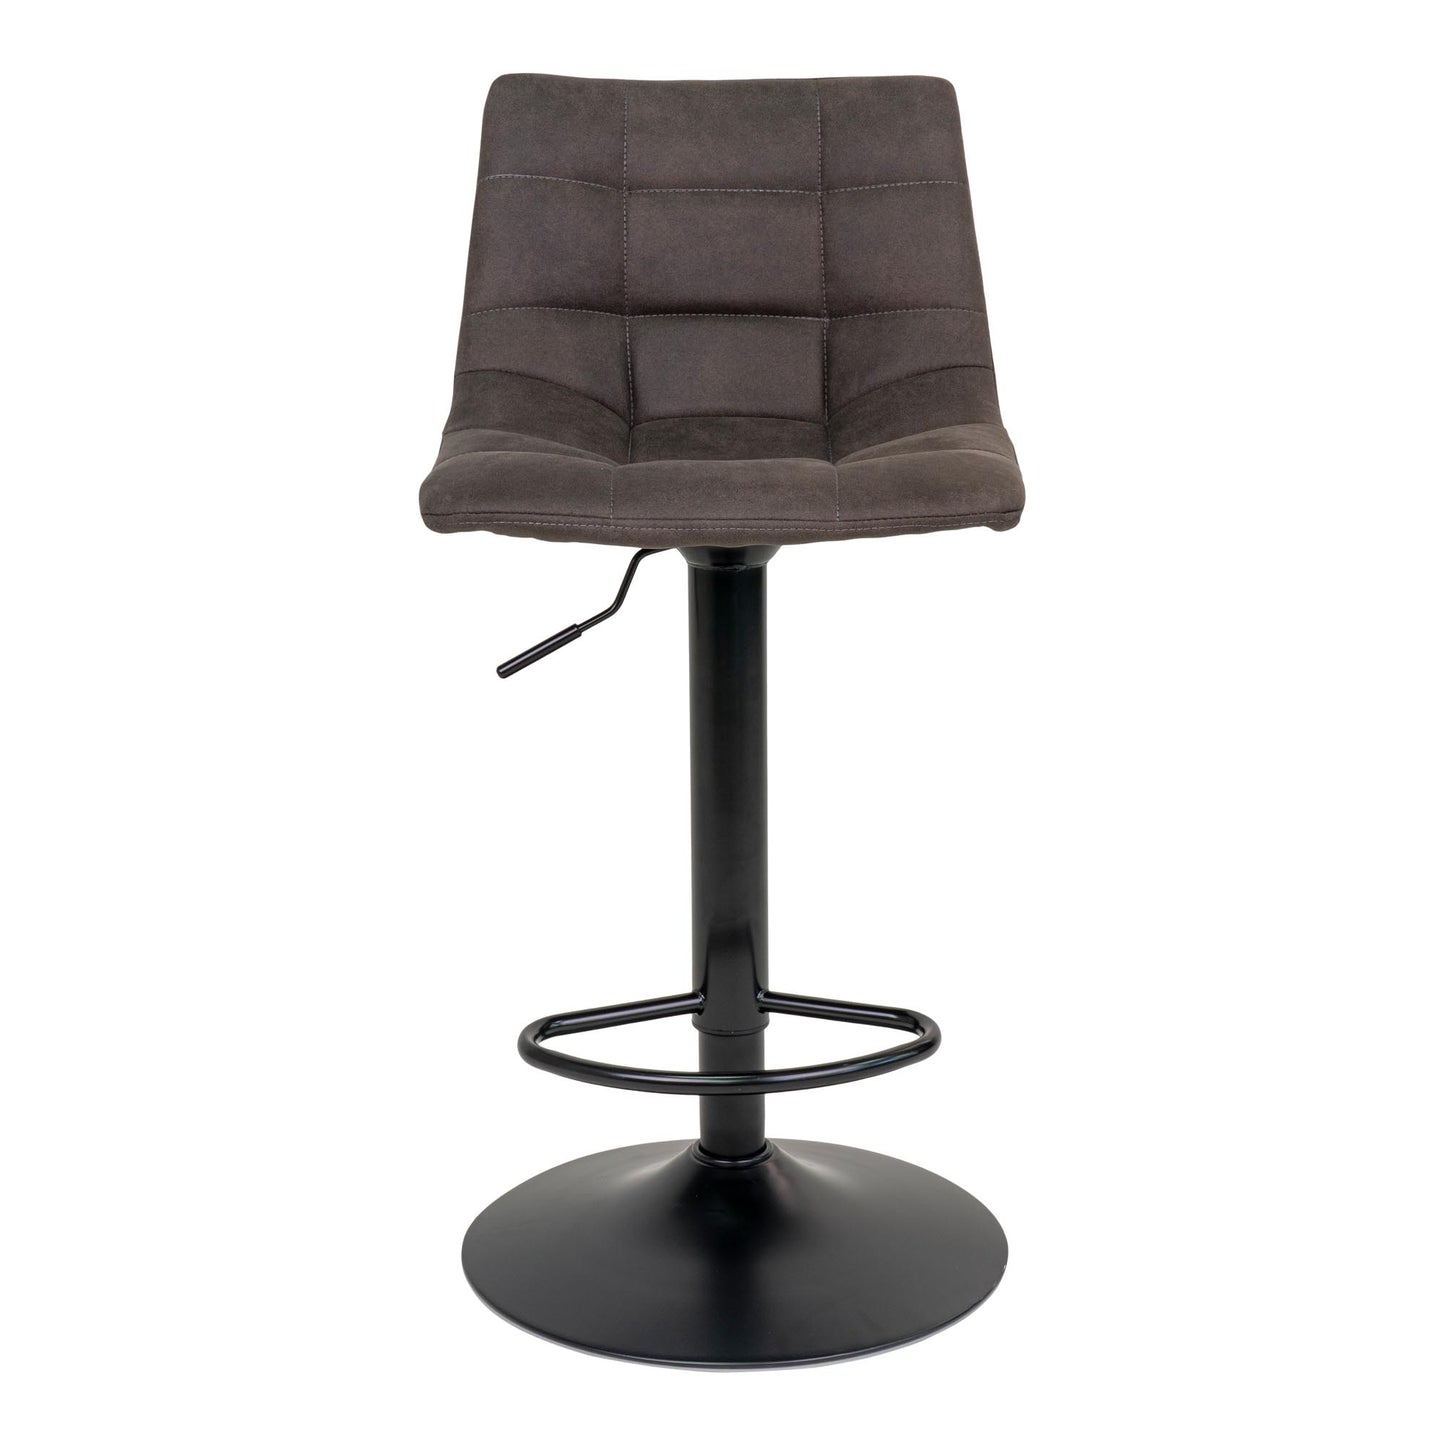 Middelfart Bar Chair - Barstoel in donkergrijs met zwarte poten - set van 2-Stoel-House Nordic-middelfart-bar-chair-bar-chair-in-dark-grey-with-black-legs-3-barstoel, hoge stoel, MIN2, stoel-Barstoel in donkergrijs met zwarte poten Materiaal Microvezel, staal Kleur Grijs-5713917009398-1001302-Cerasus Homestyle